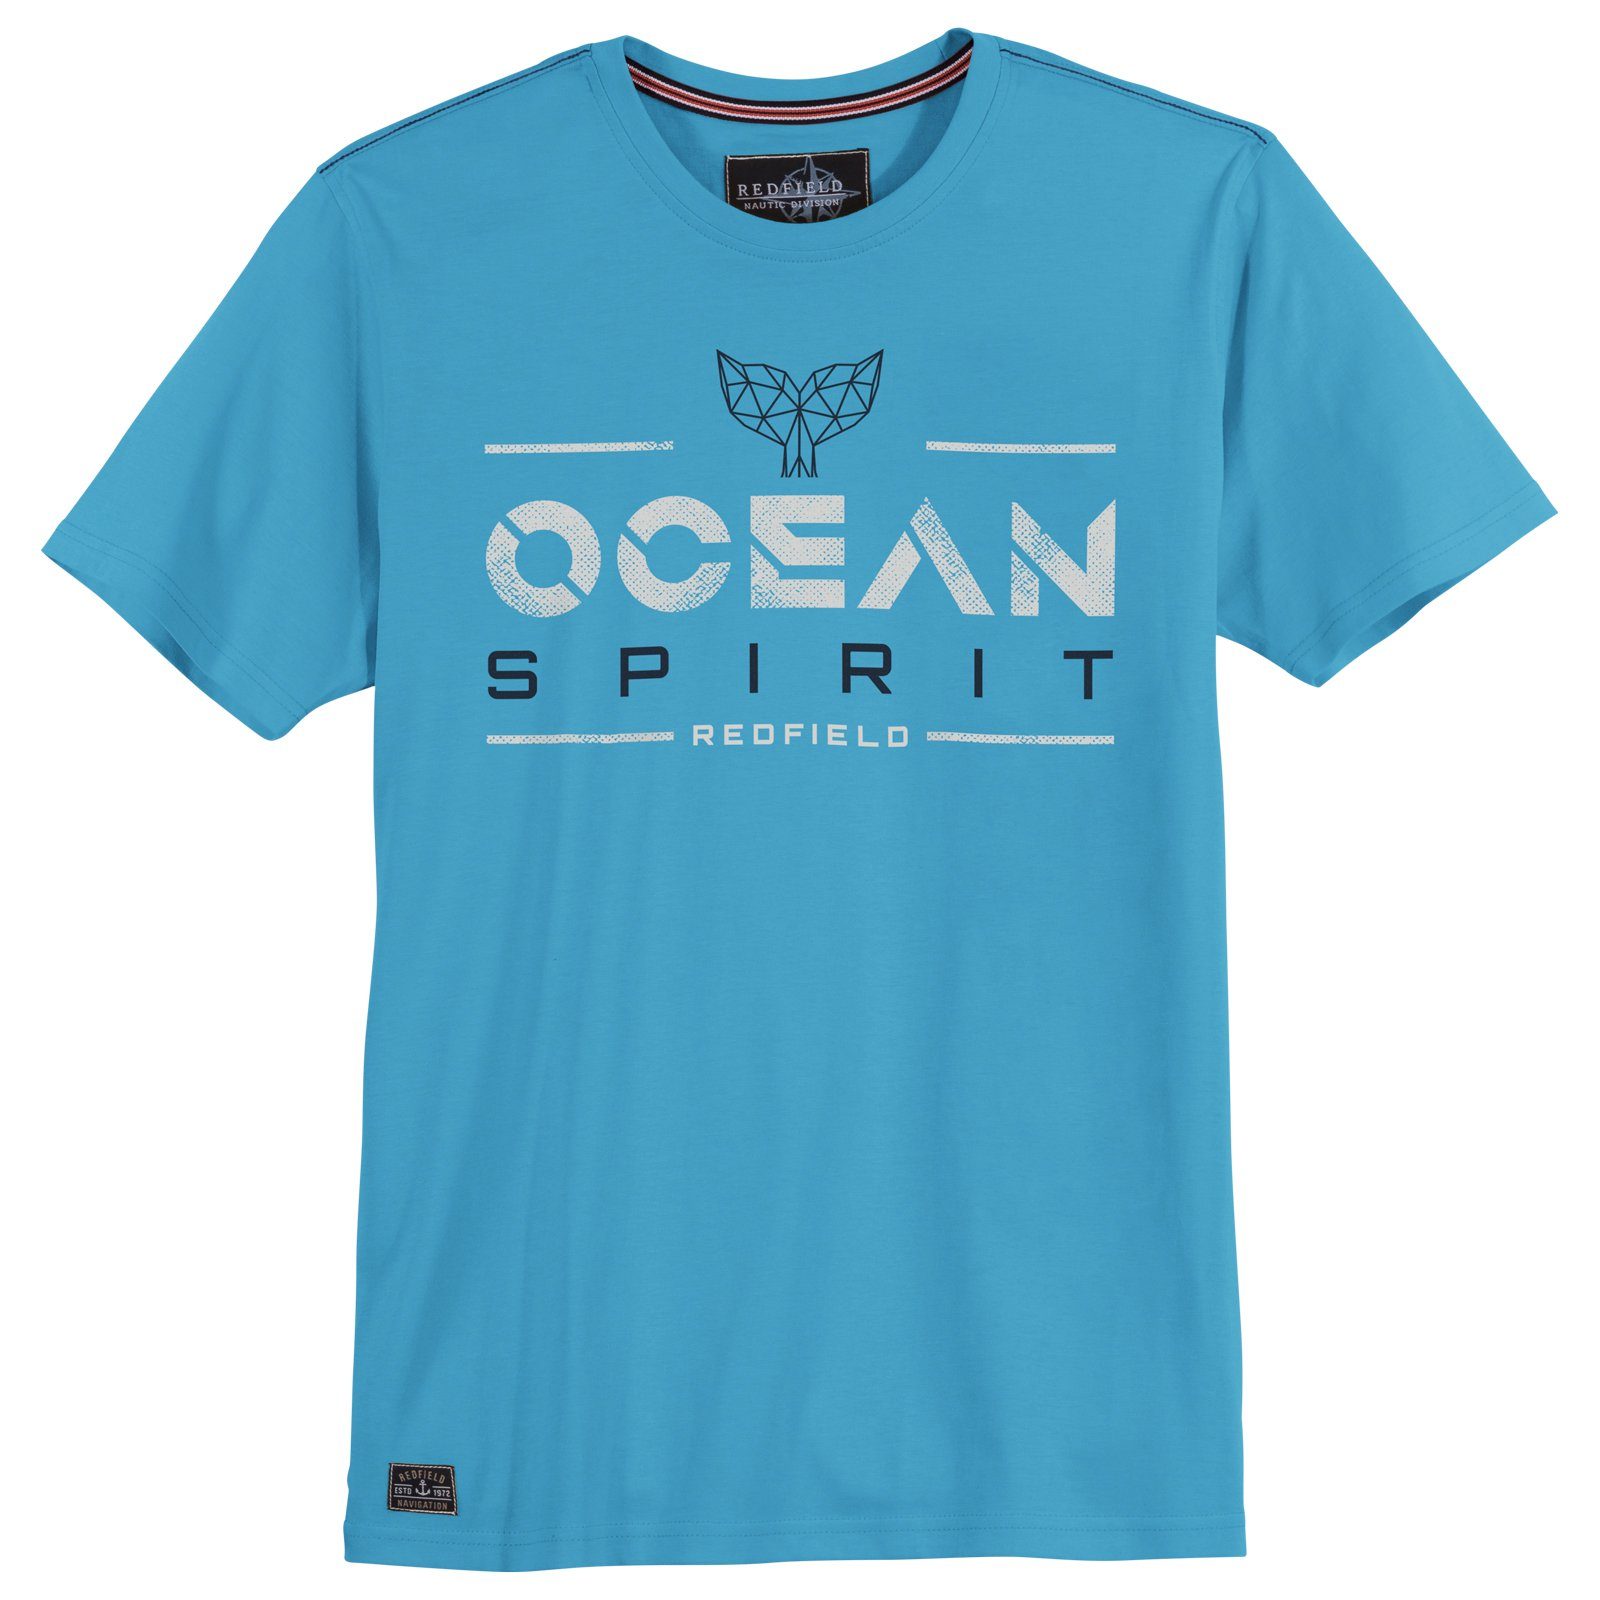 azurblau Große Ocean redfield Spirit Print Redfield Rundhalsshirt Größen Herren T-Shirt